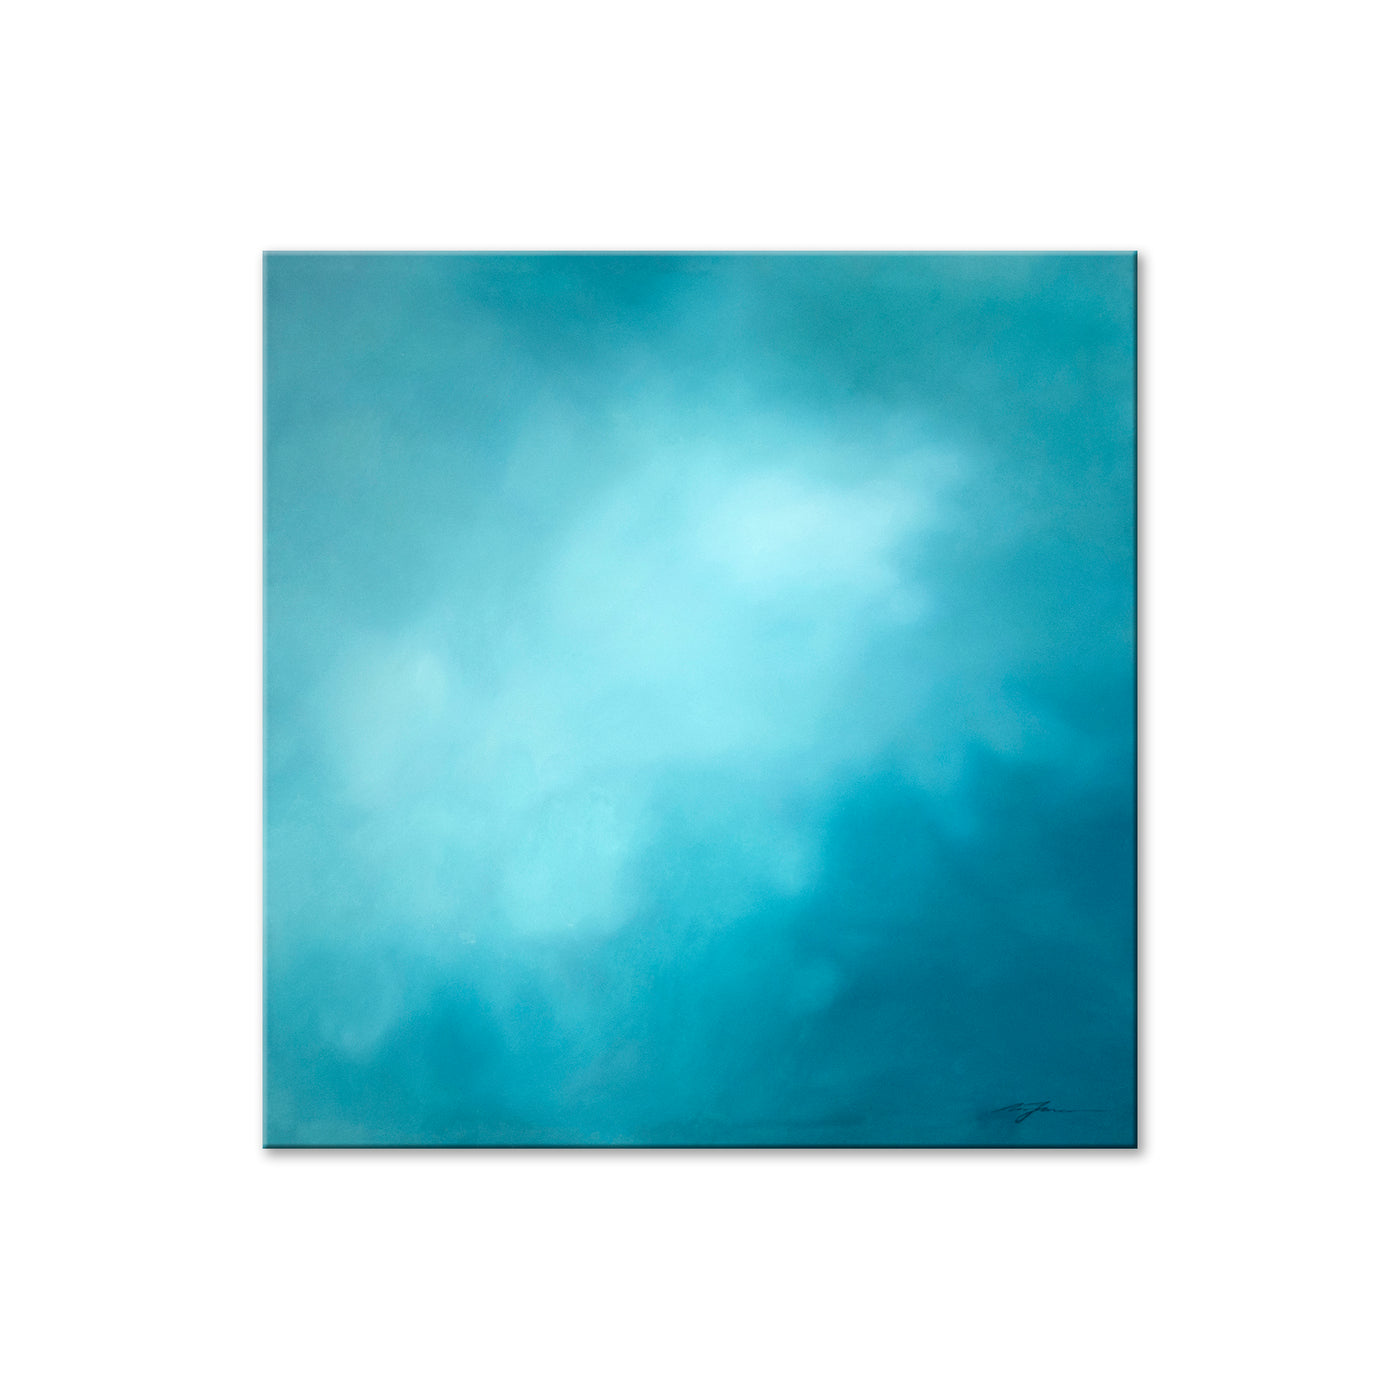 Underwater Clouds XII